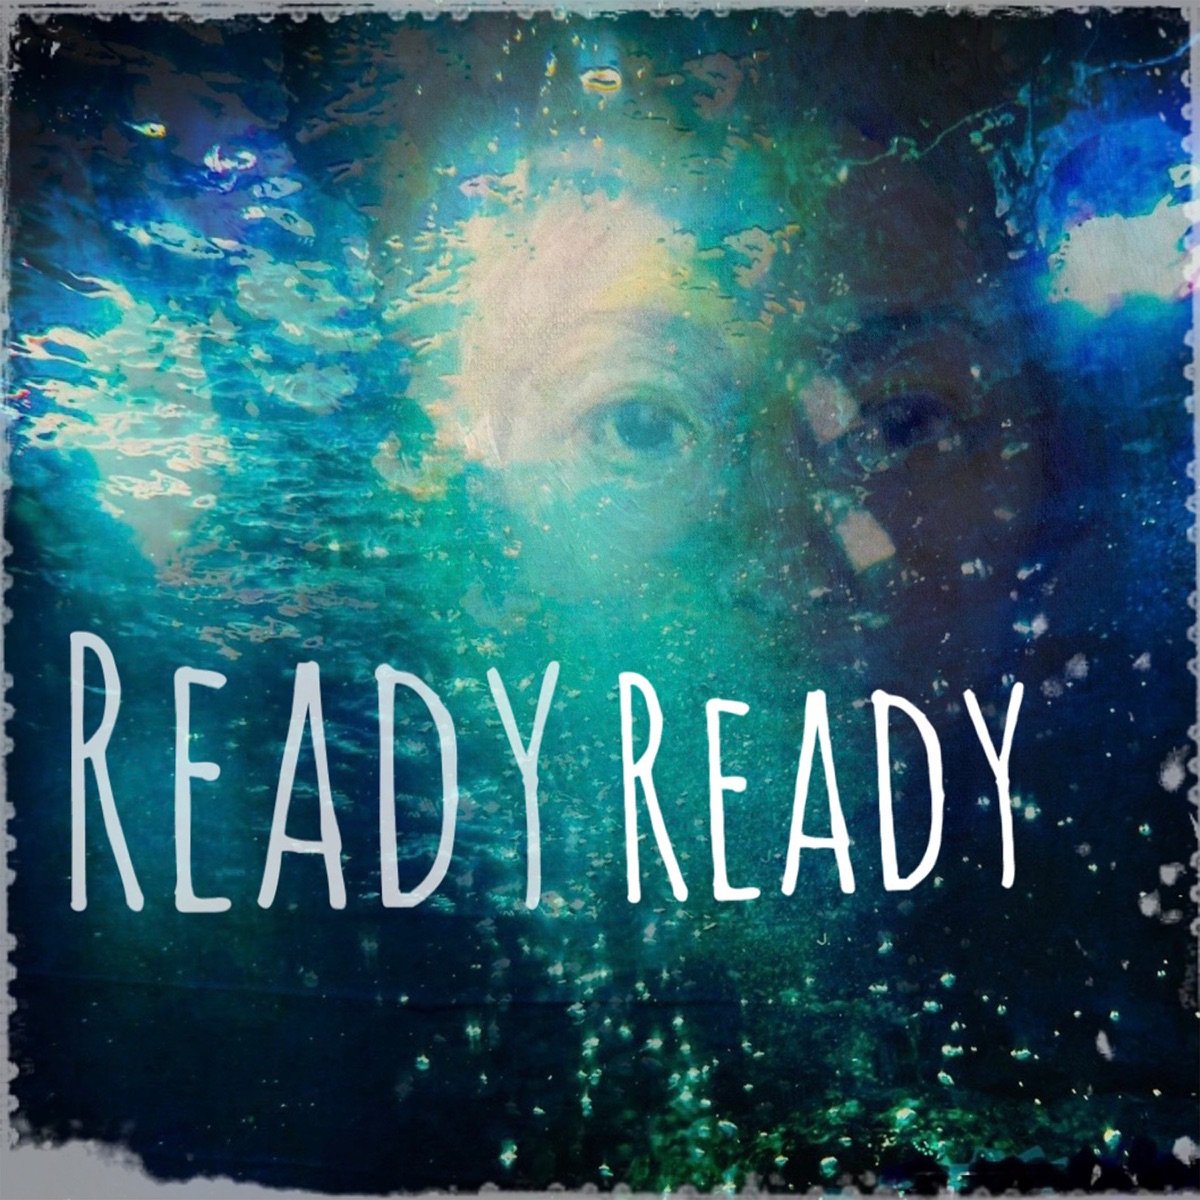 『安藤裕子 - ReadyReady』収録の『ReadyReady』ジャケット